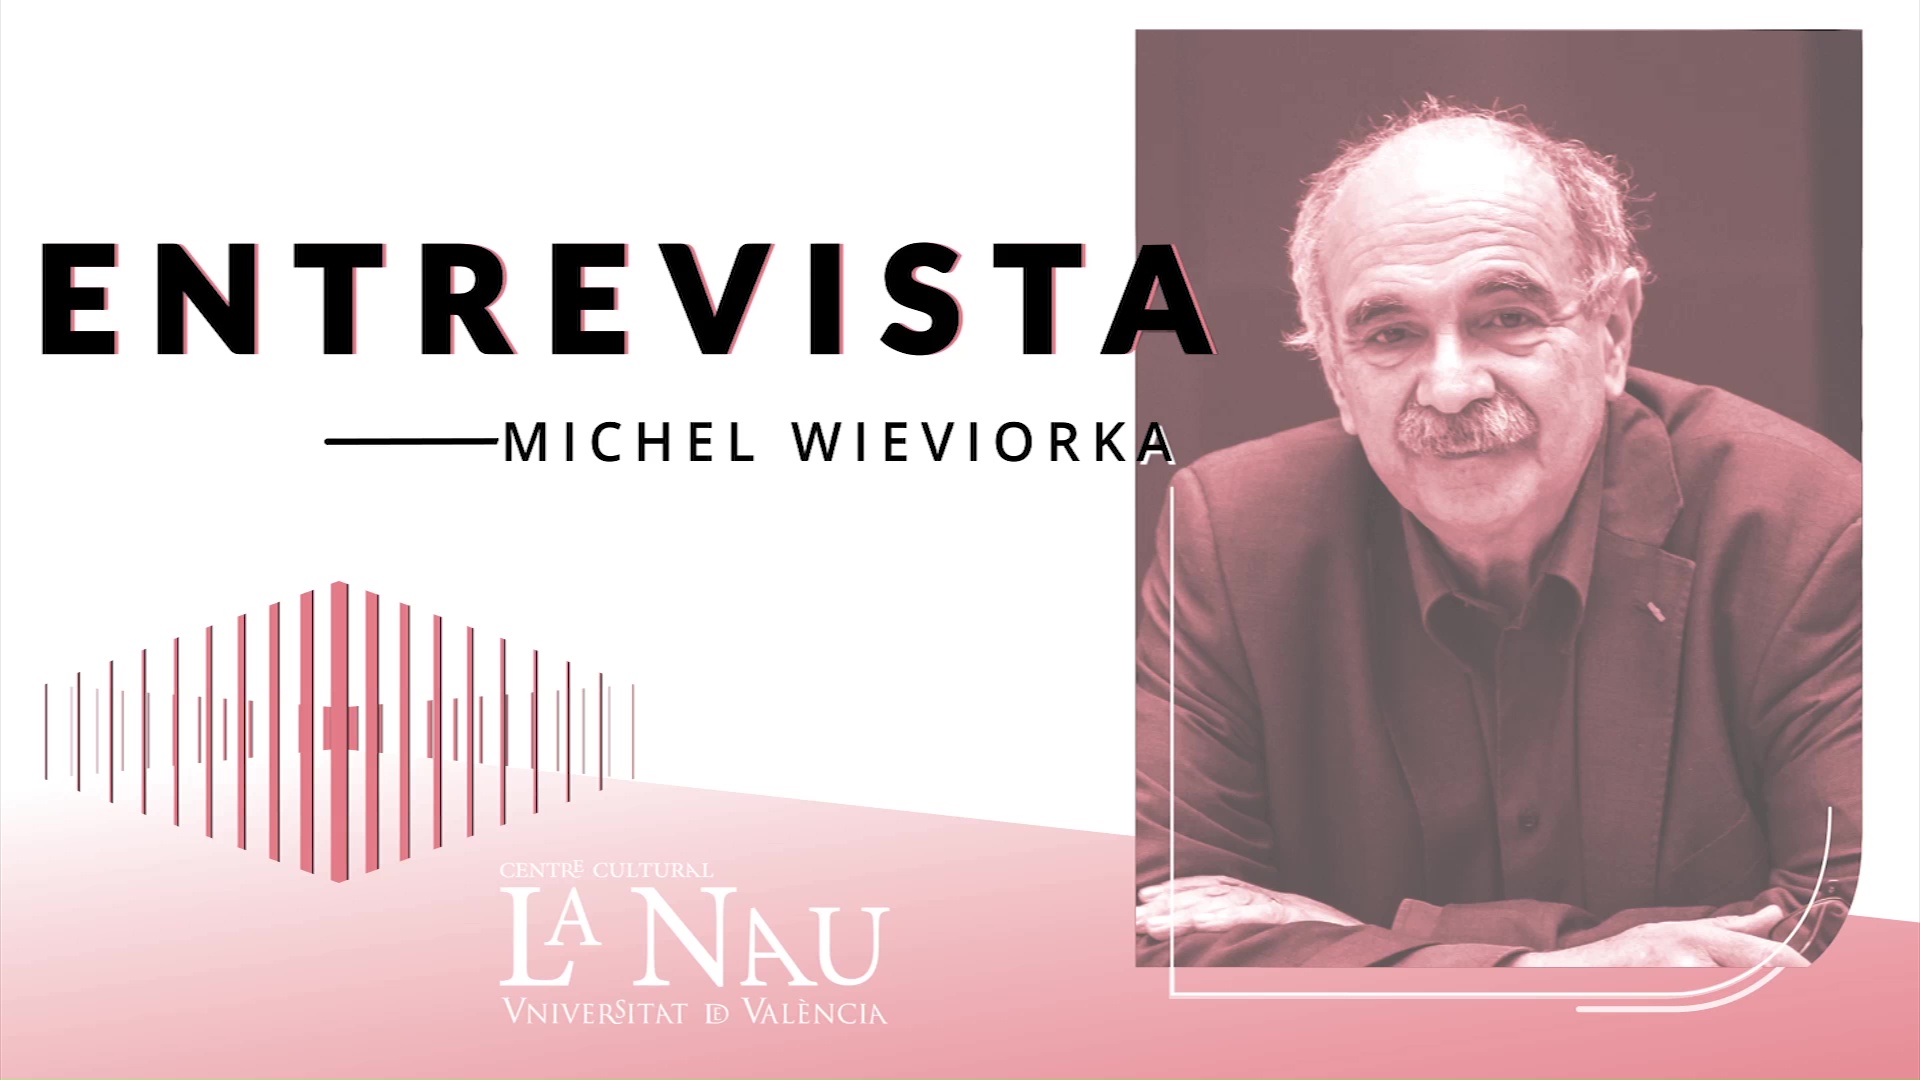 Entrevista a La Nau. Michel Wieviorka